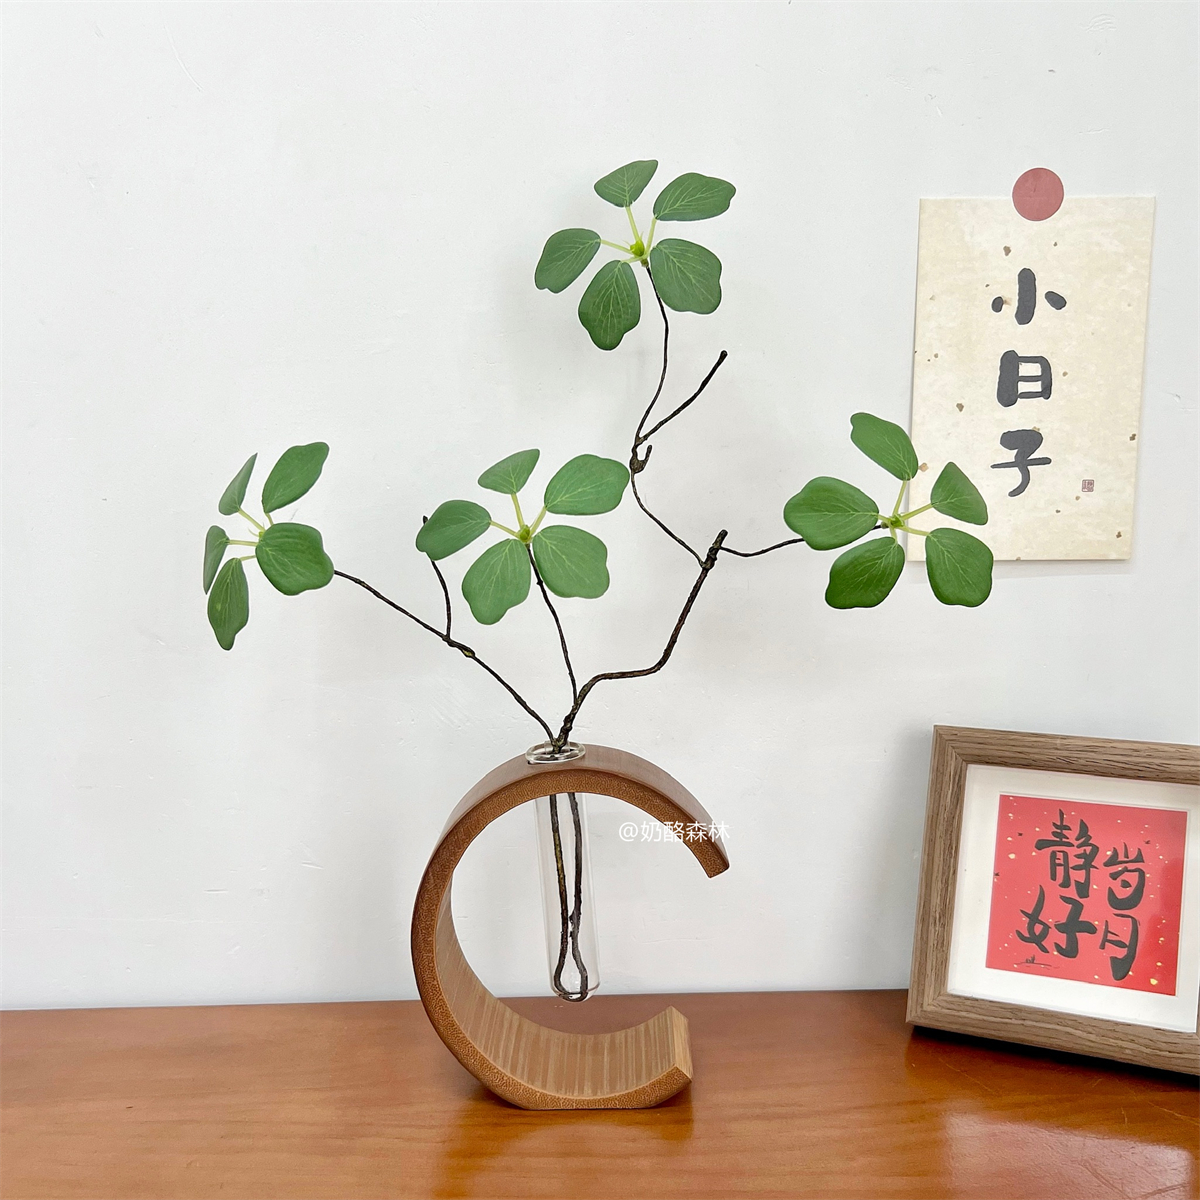 中式竹筒花瓶 創意吊鐘觀音蓮葉禪意花瓶 綠植水培 (2.5折)